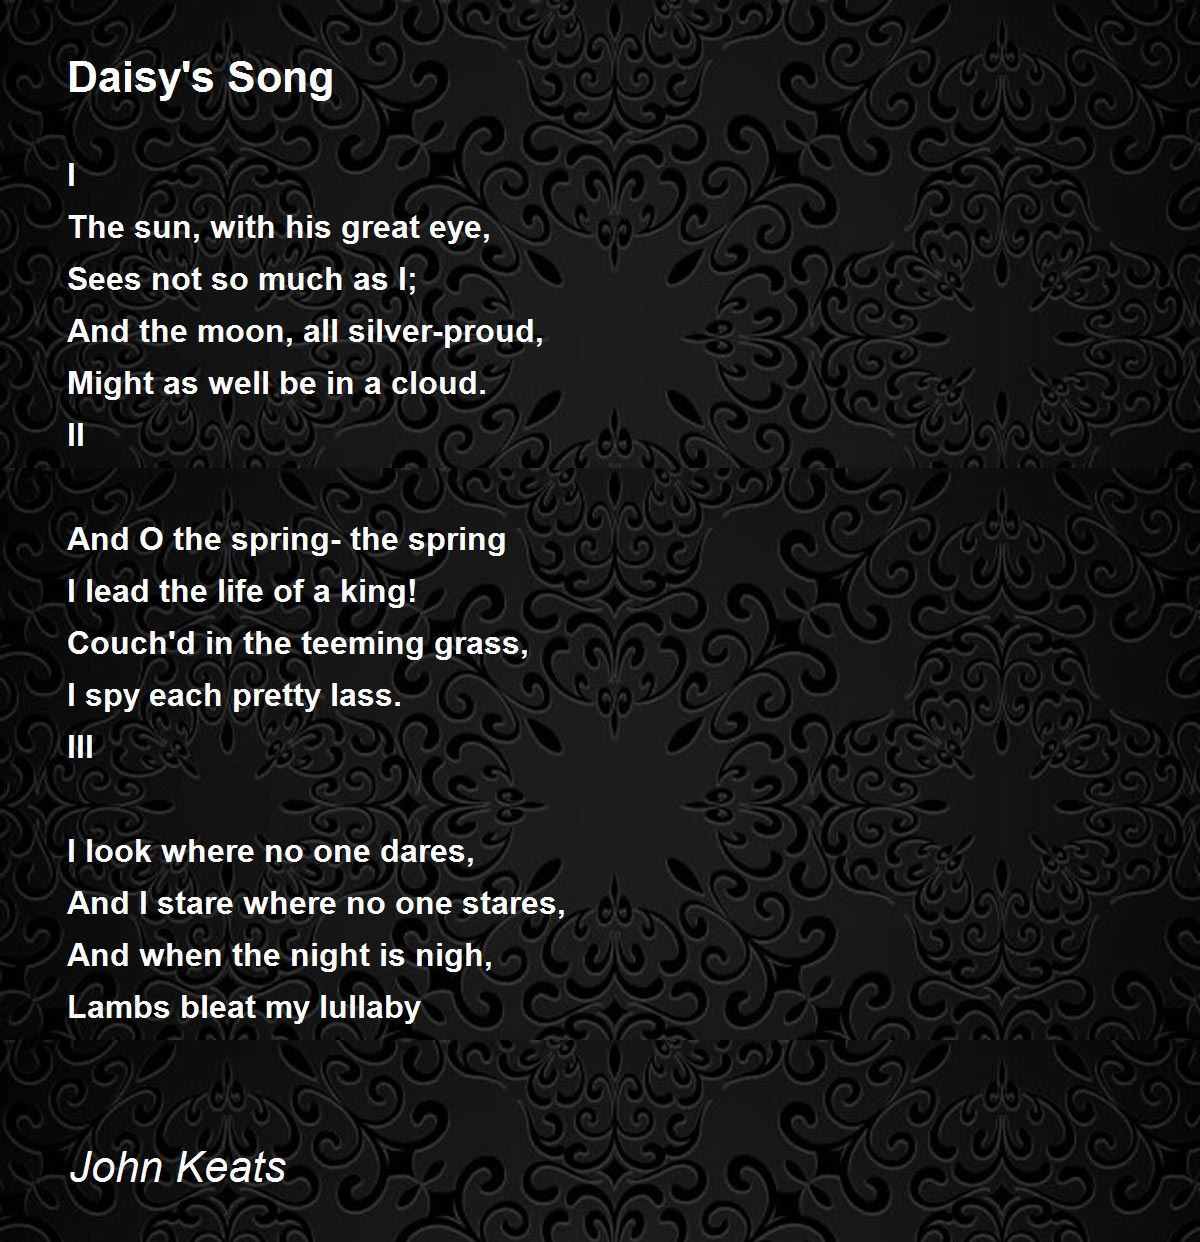 Daisy's Song - Daisy's Song Poem by John Keats